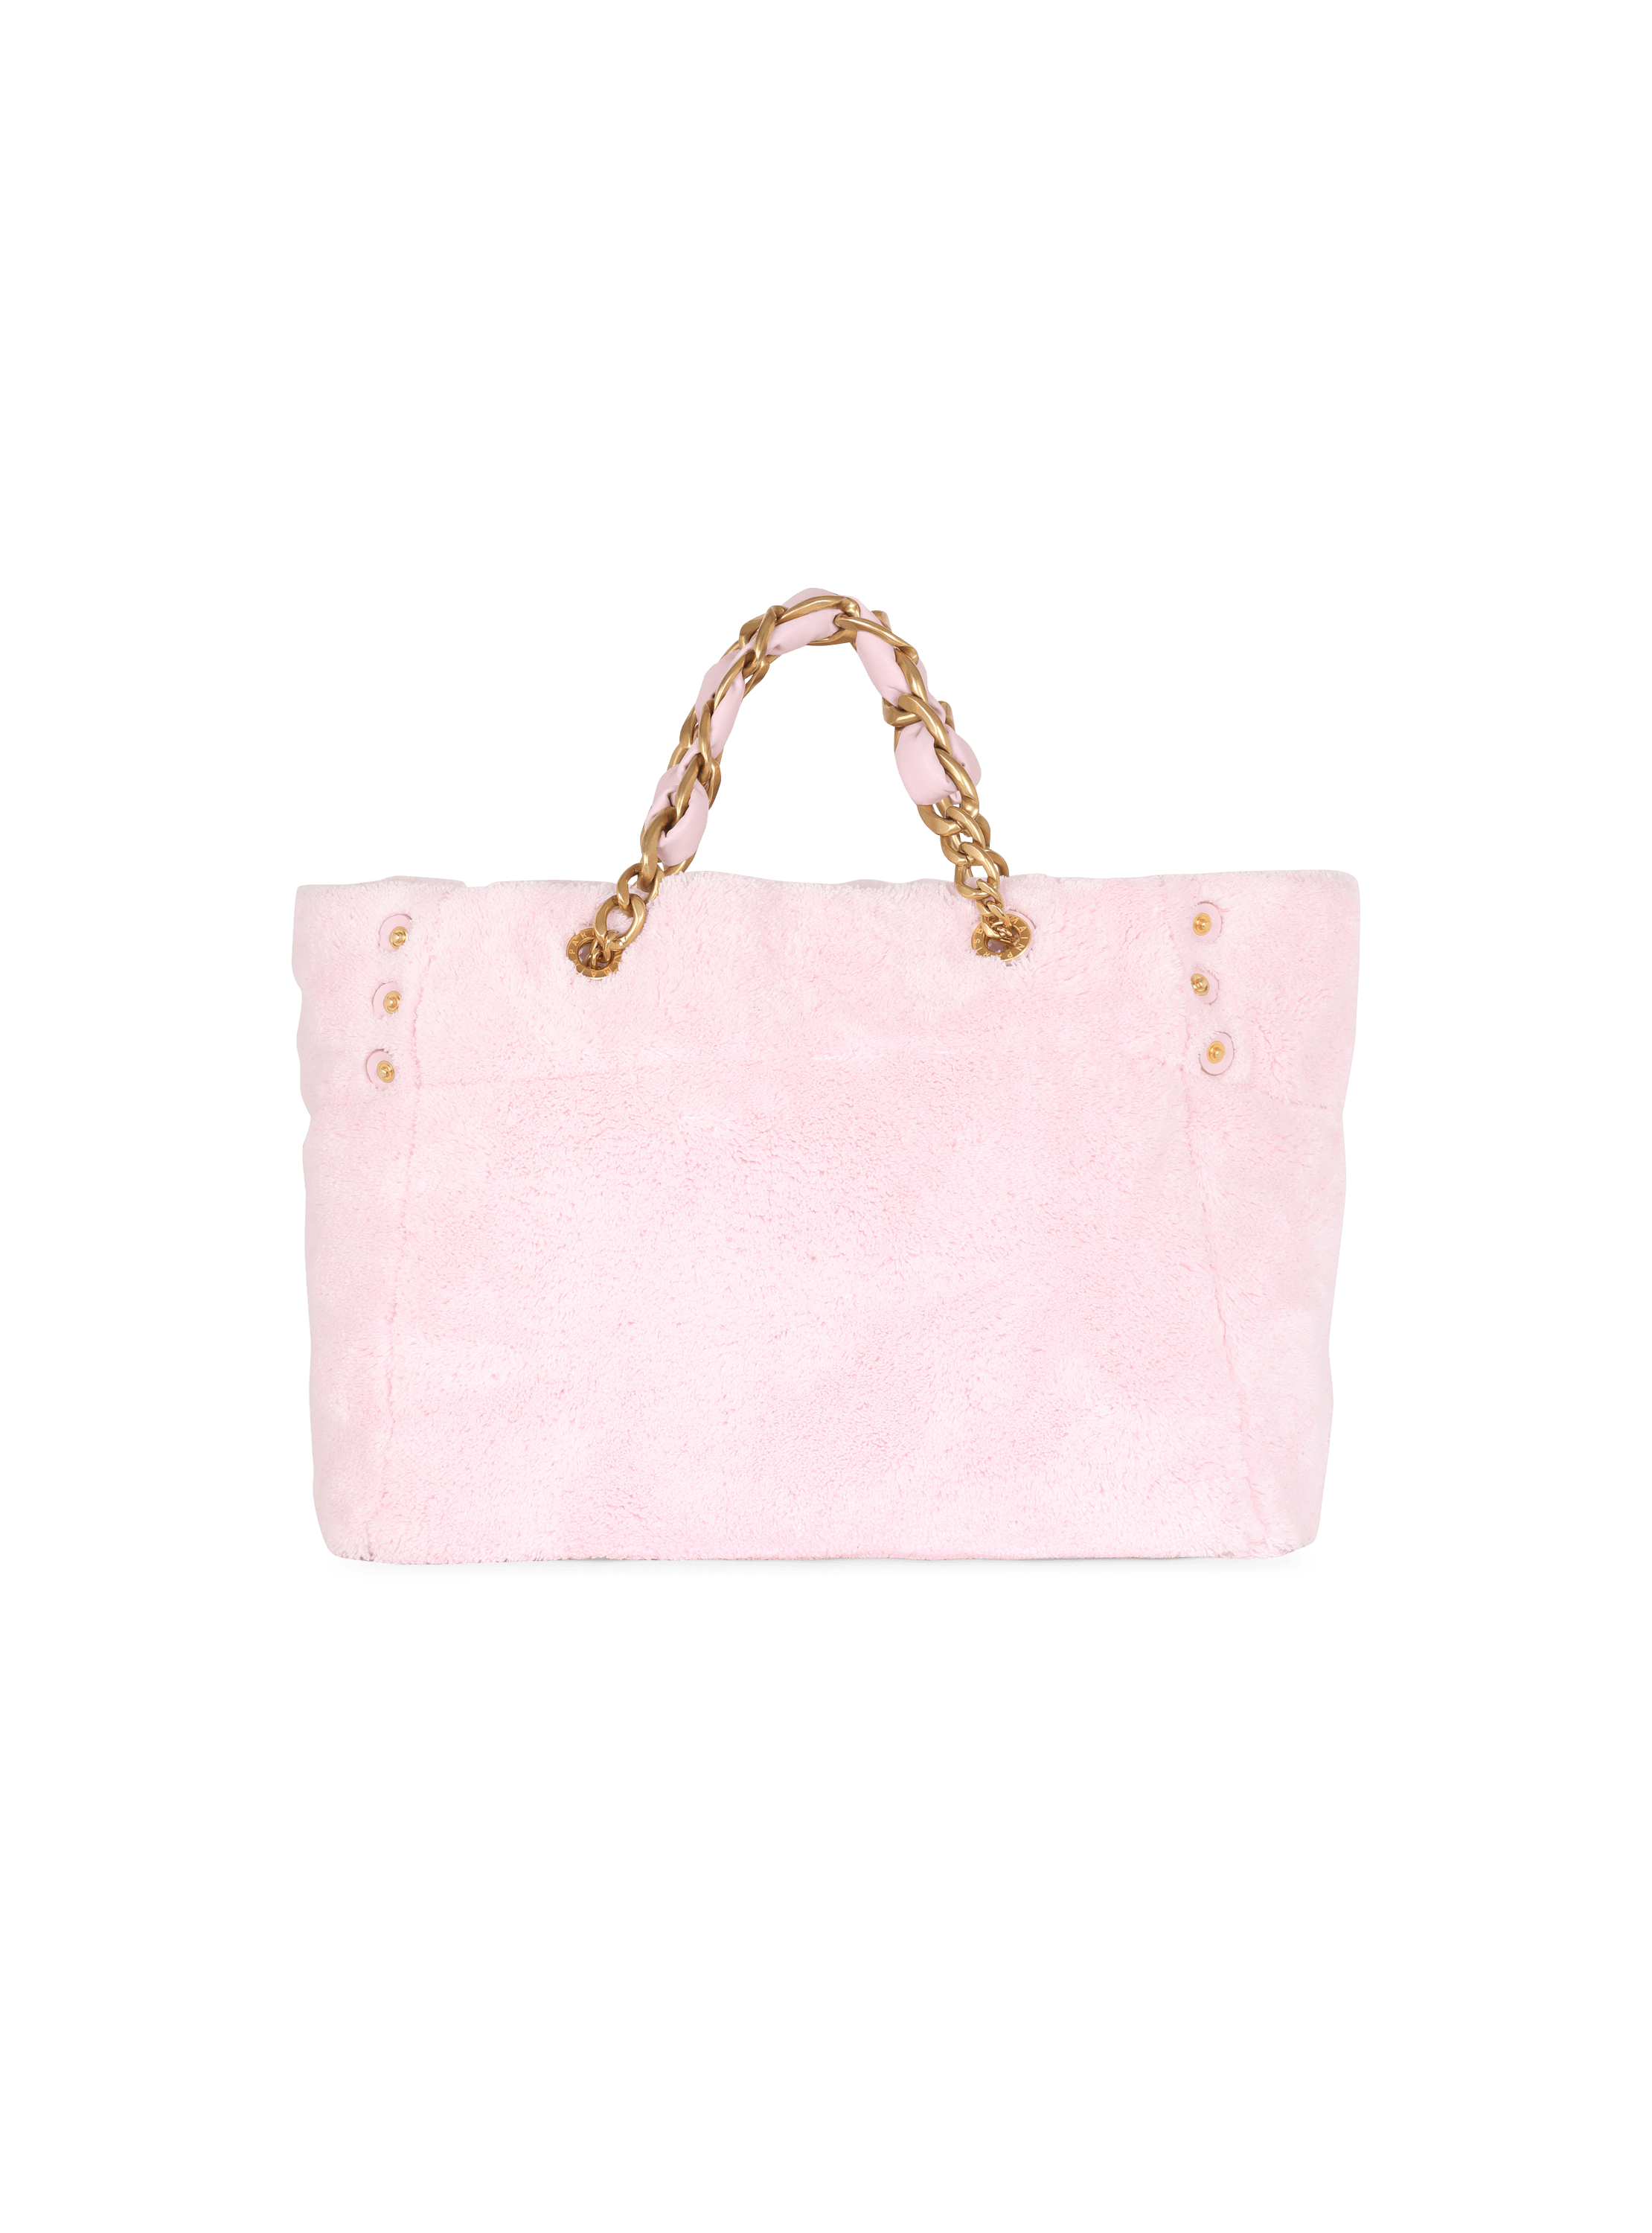 Chanel Baby Bag 